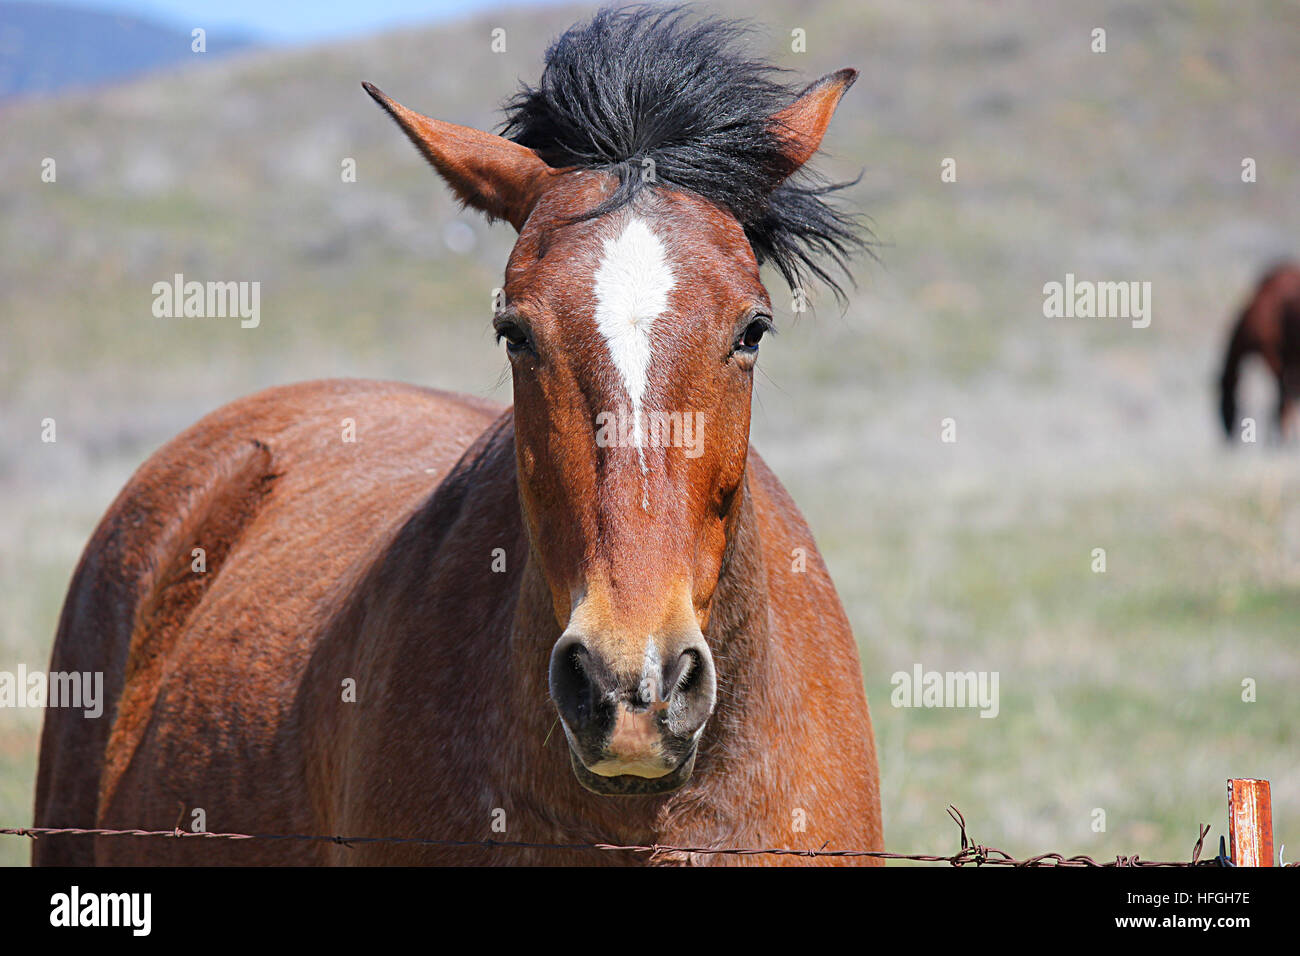 Près du cheval face à l'appareil photo. Banque D'Images